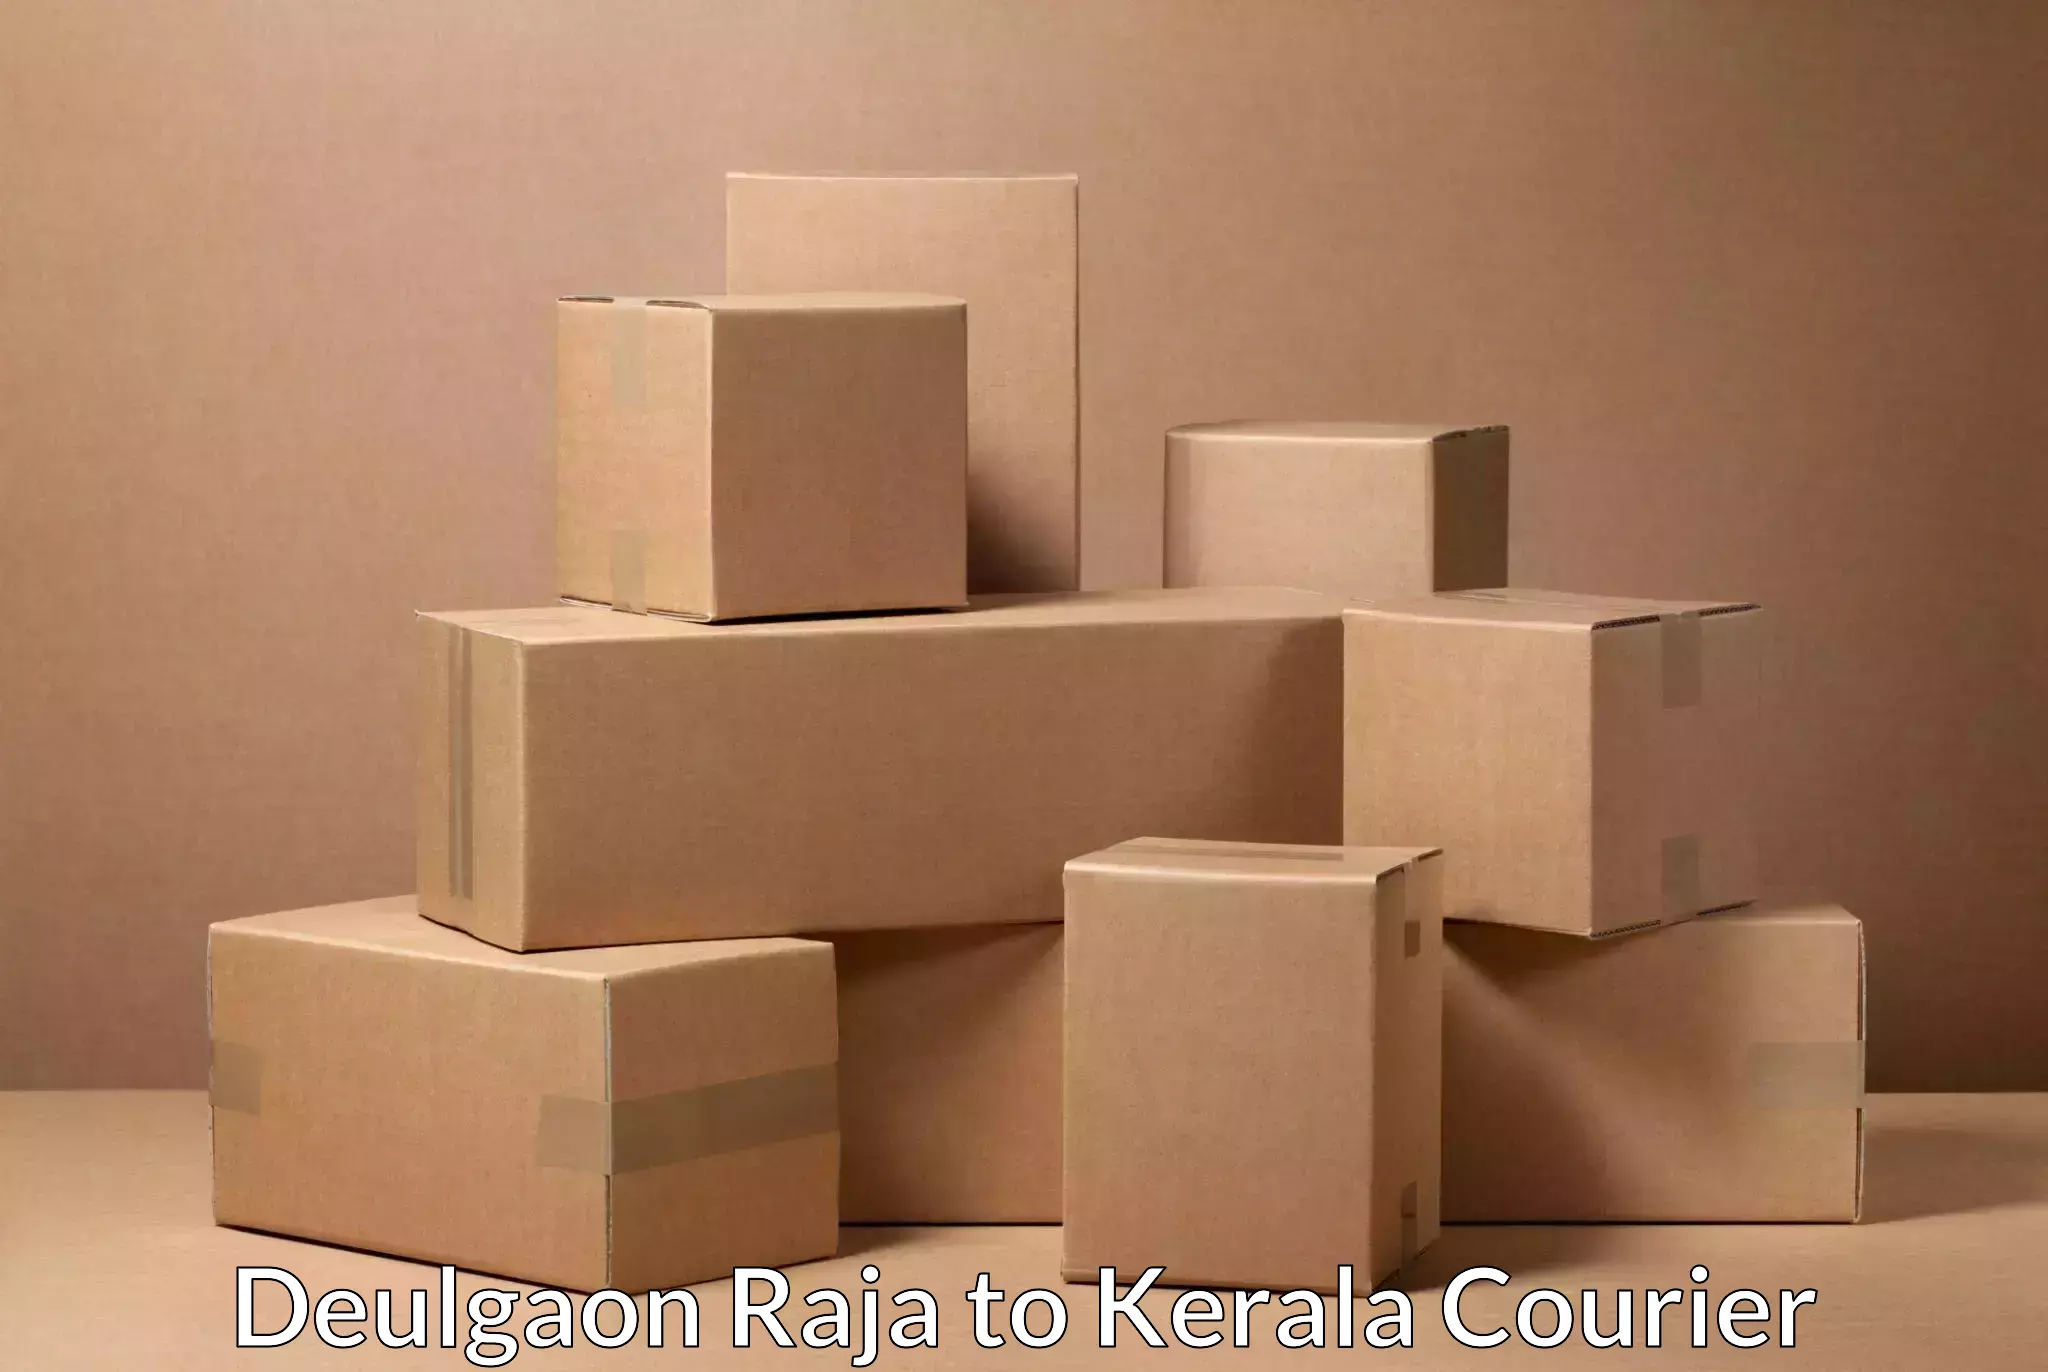 High-performance logistics Deulgaon Raja to Kothanalloor